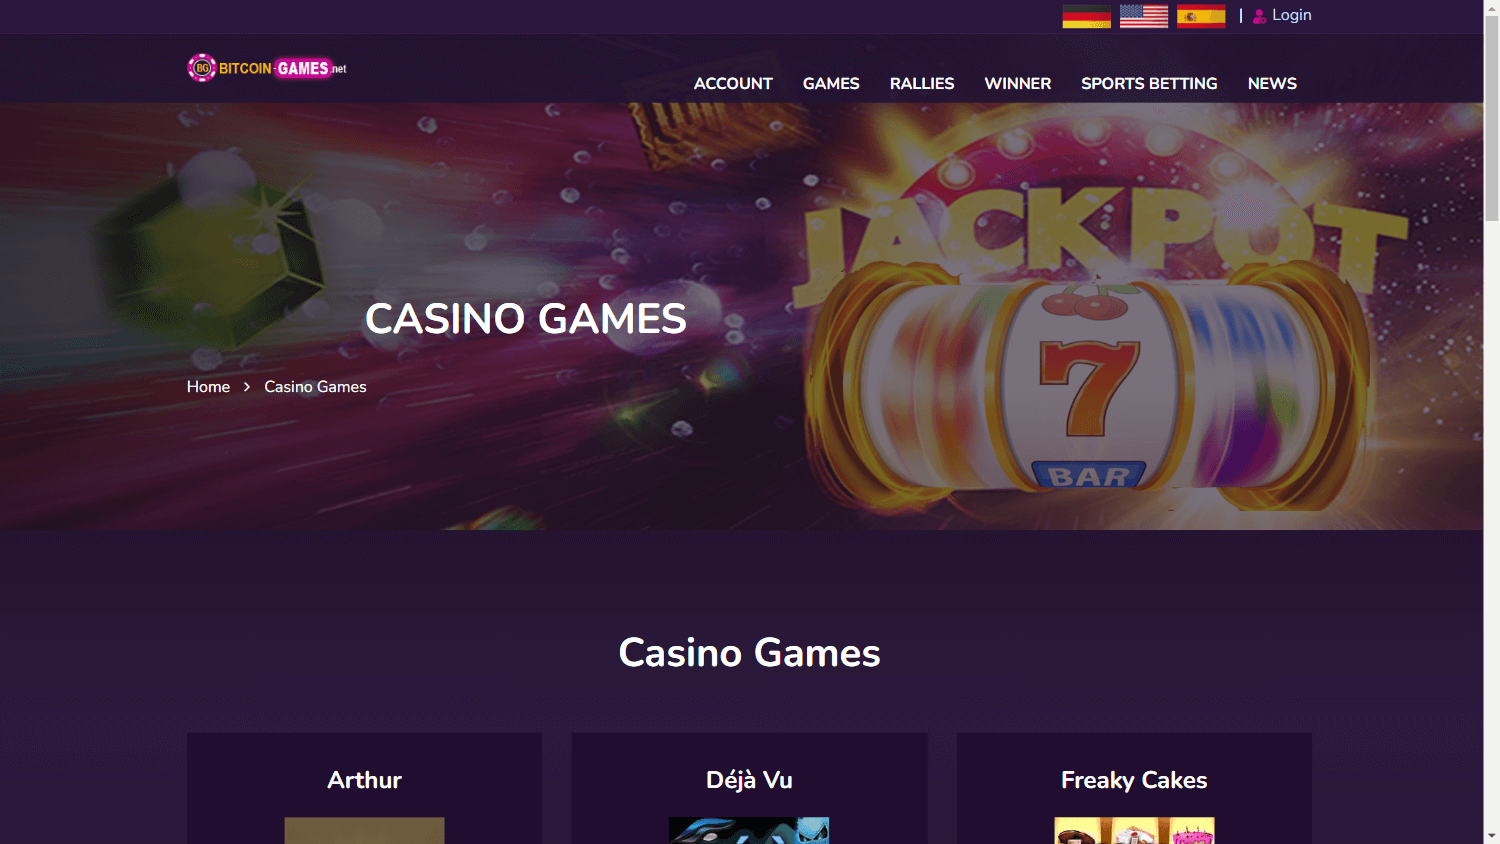 bitcoin_games_net_casino_homepage_desktop